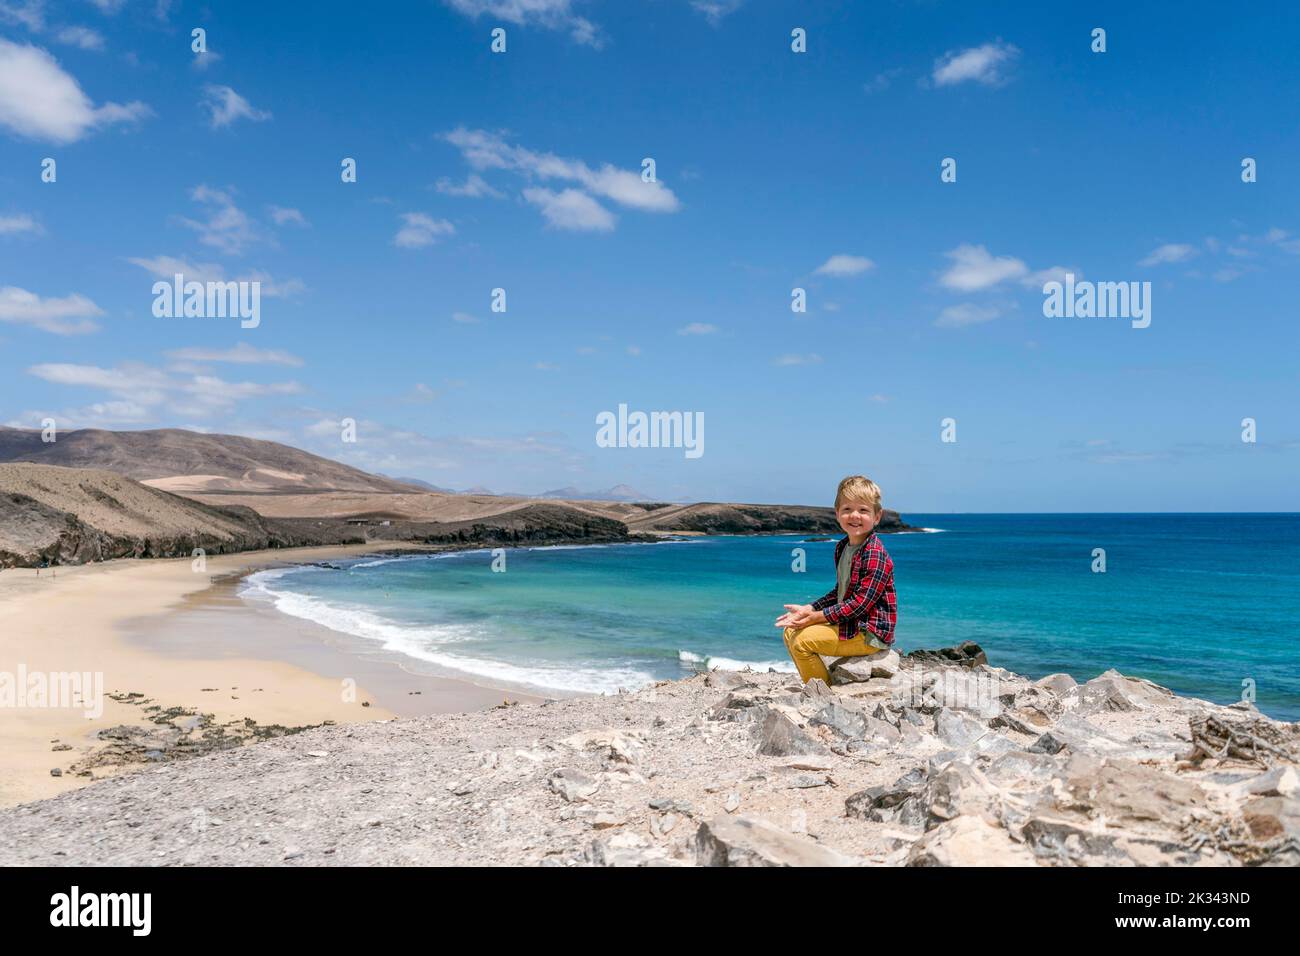 Petit garçon appréciant le paysage de la plage appelée Caleta del Congrio dans le parc national de Los Ajaches à Lanzarote, îles Canaries, Espagne Banque D'Images